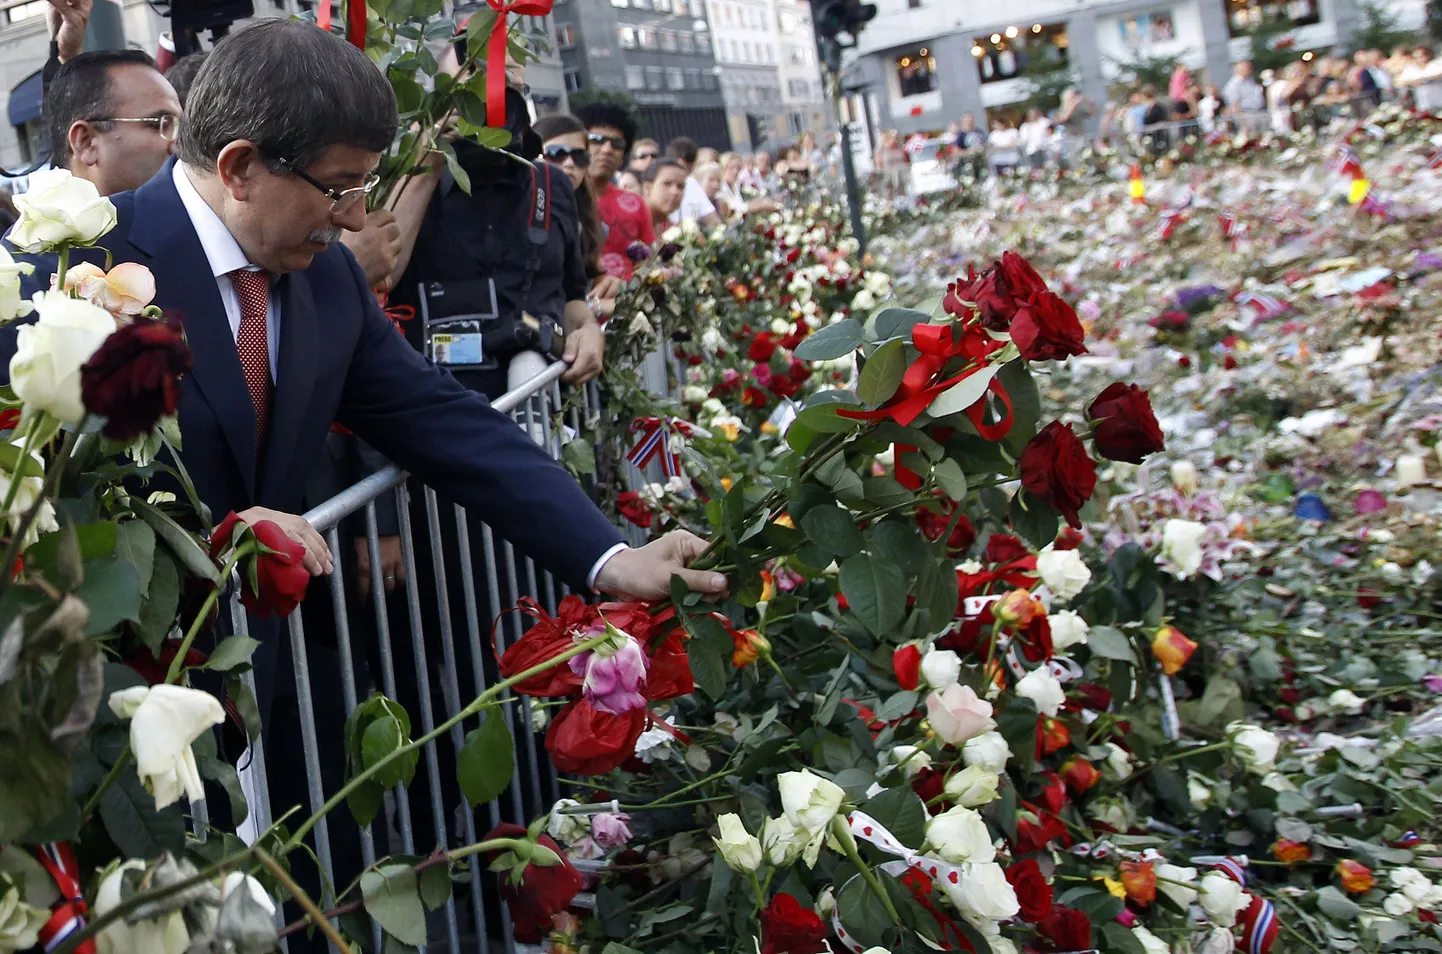 Lillemeri massitulistamise ohvrite mälestuseks Oslo katedraali ees 1. augustil. Esiplaanil Türgi välisminister Ahmet Davutoglu.